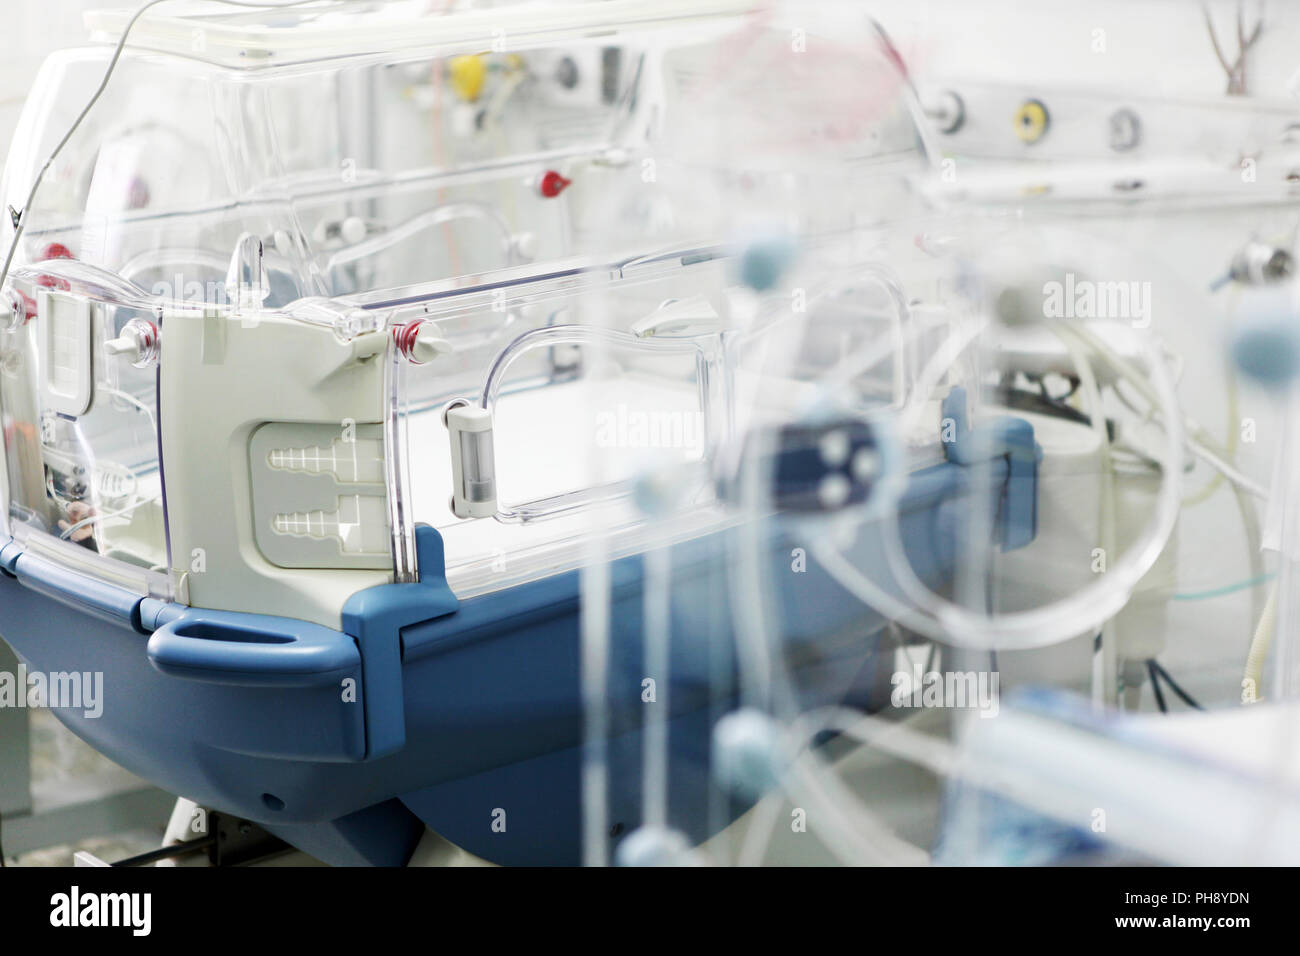 Neonatal intensive care unit Stock Photo